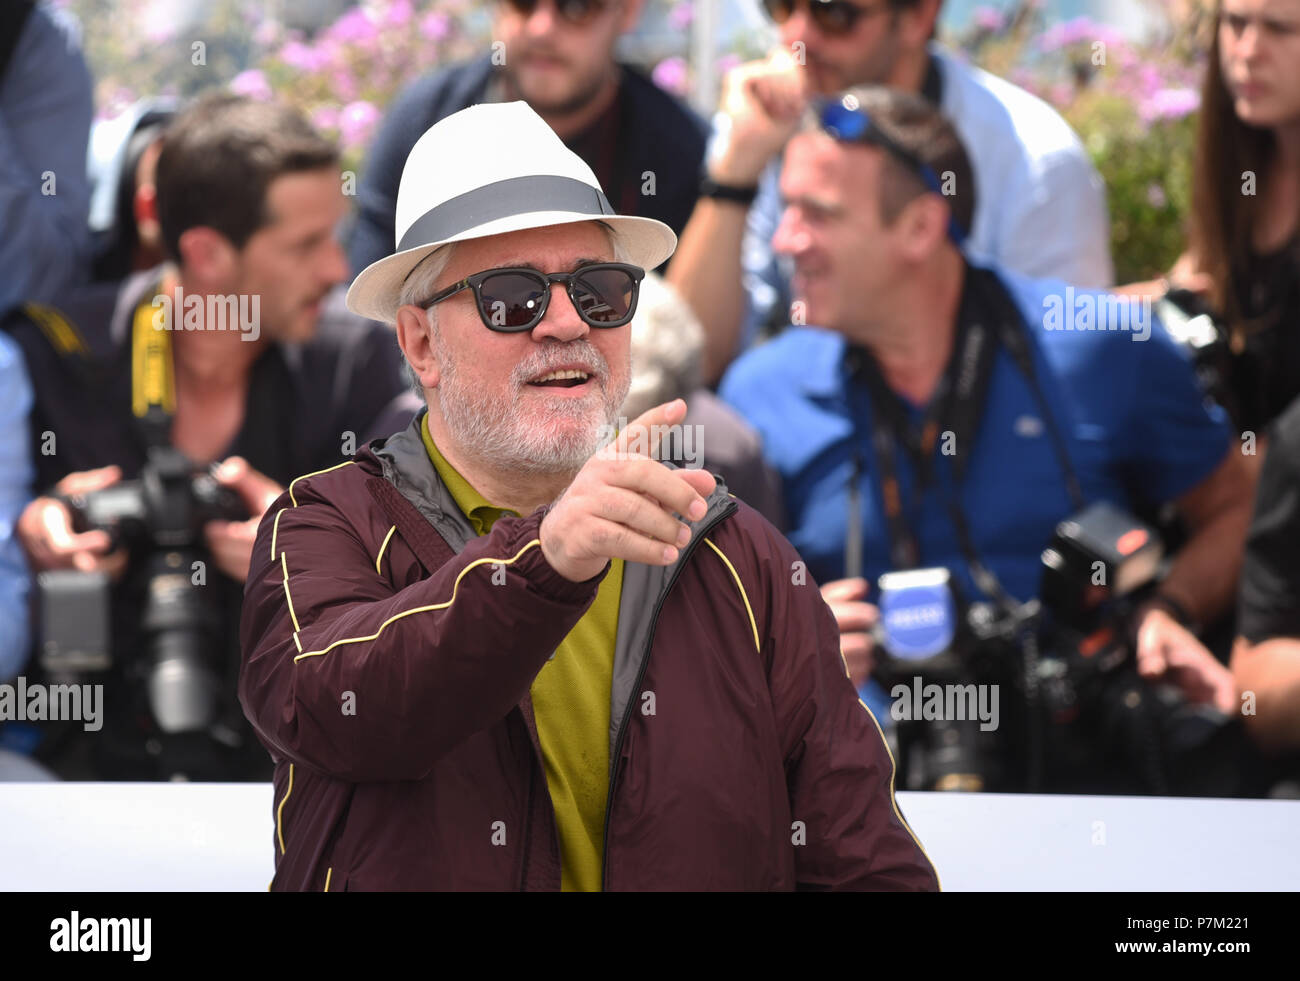 Mai 17, 2017 - Cannes, Frankreich: Pedro Almodovar besucht die Jury photocall während des 70. Filmfestival in Cannes. Pedro Almodovar lors du 70eme Festival de Cannes. *** Frankreich/KEINE VERKÄUFE IN DEN FRANZÖSISCHEN MEDIEN *** Stockfoto